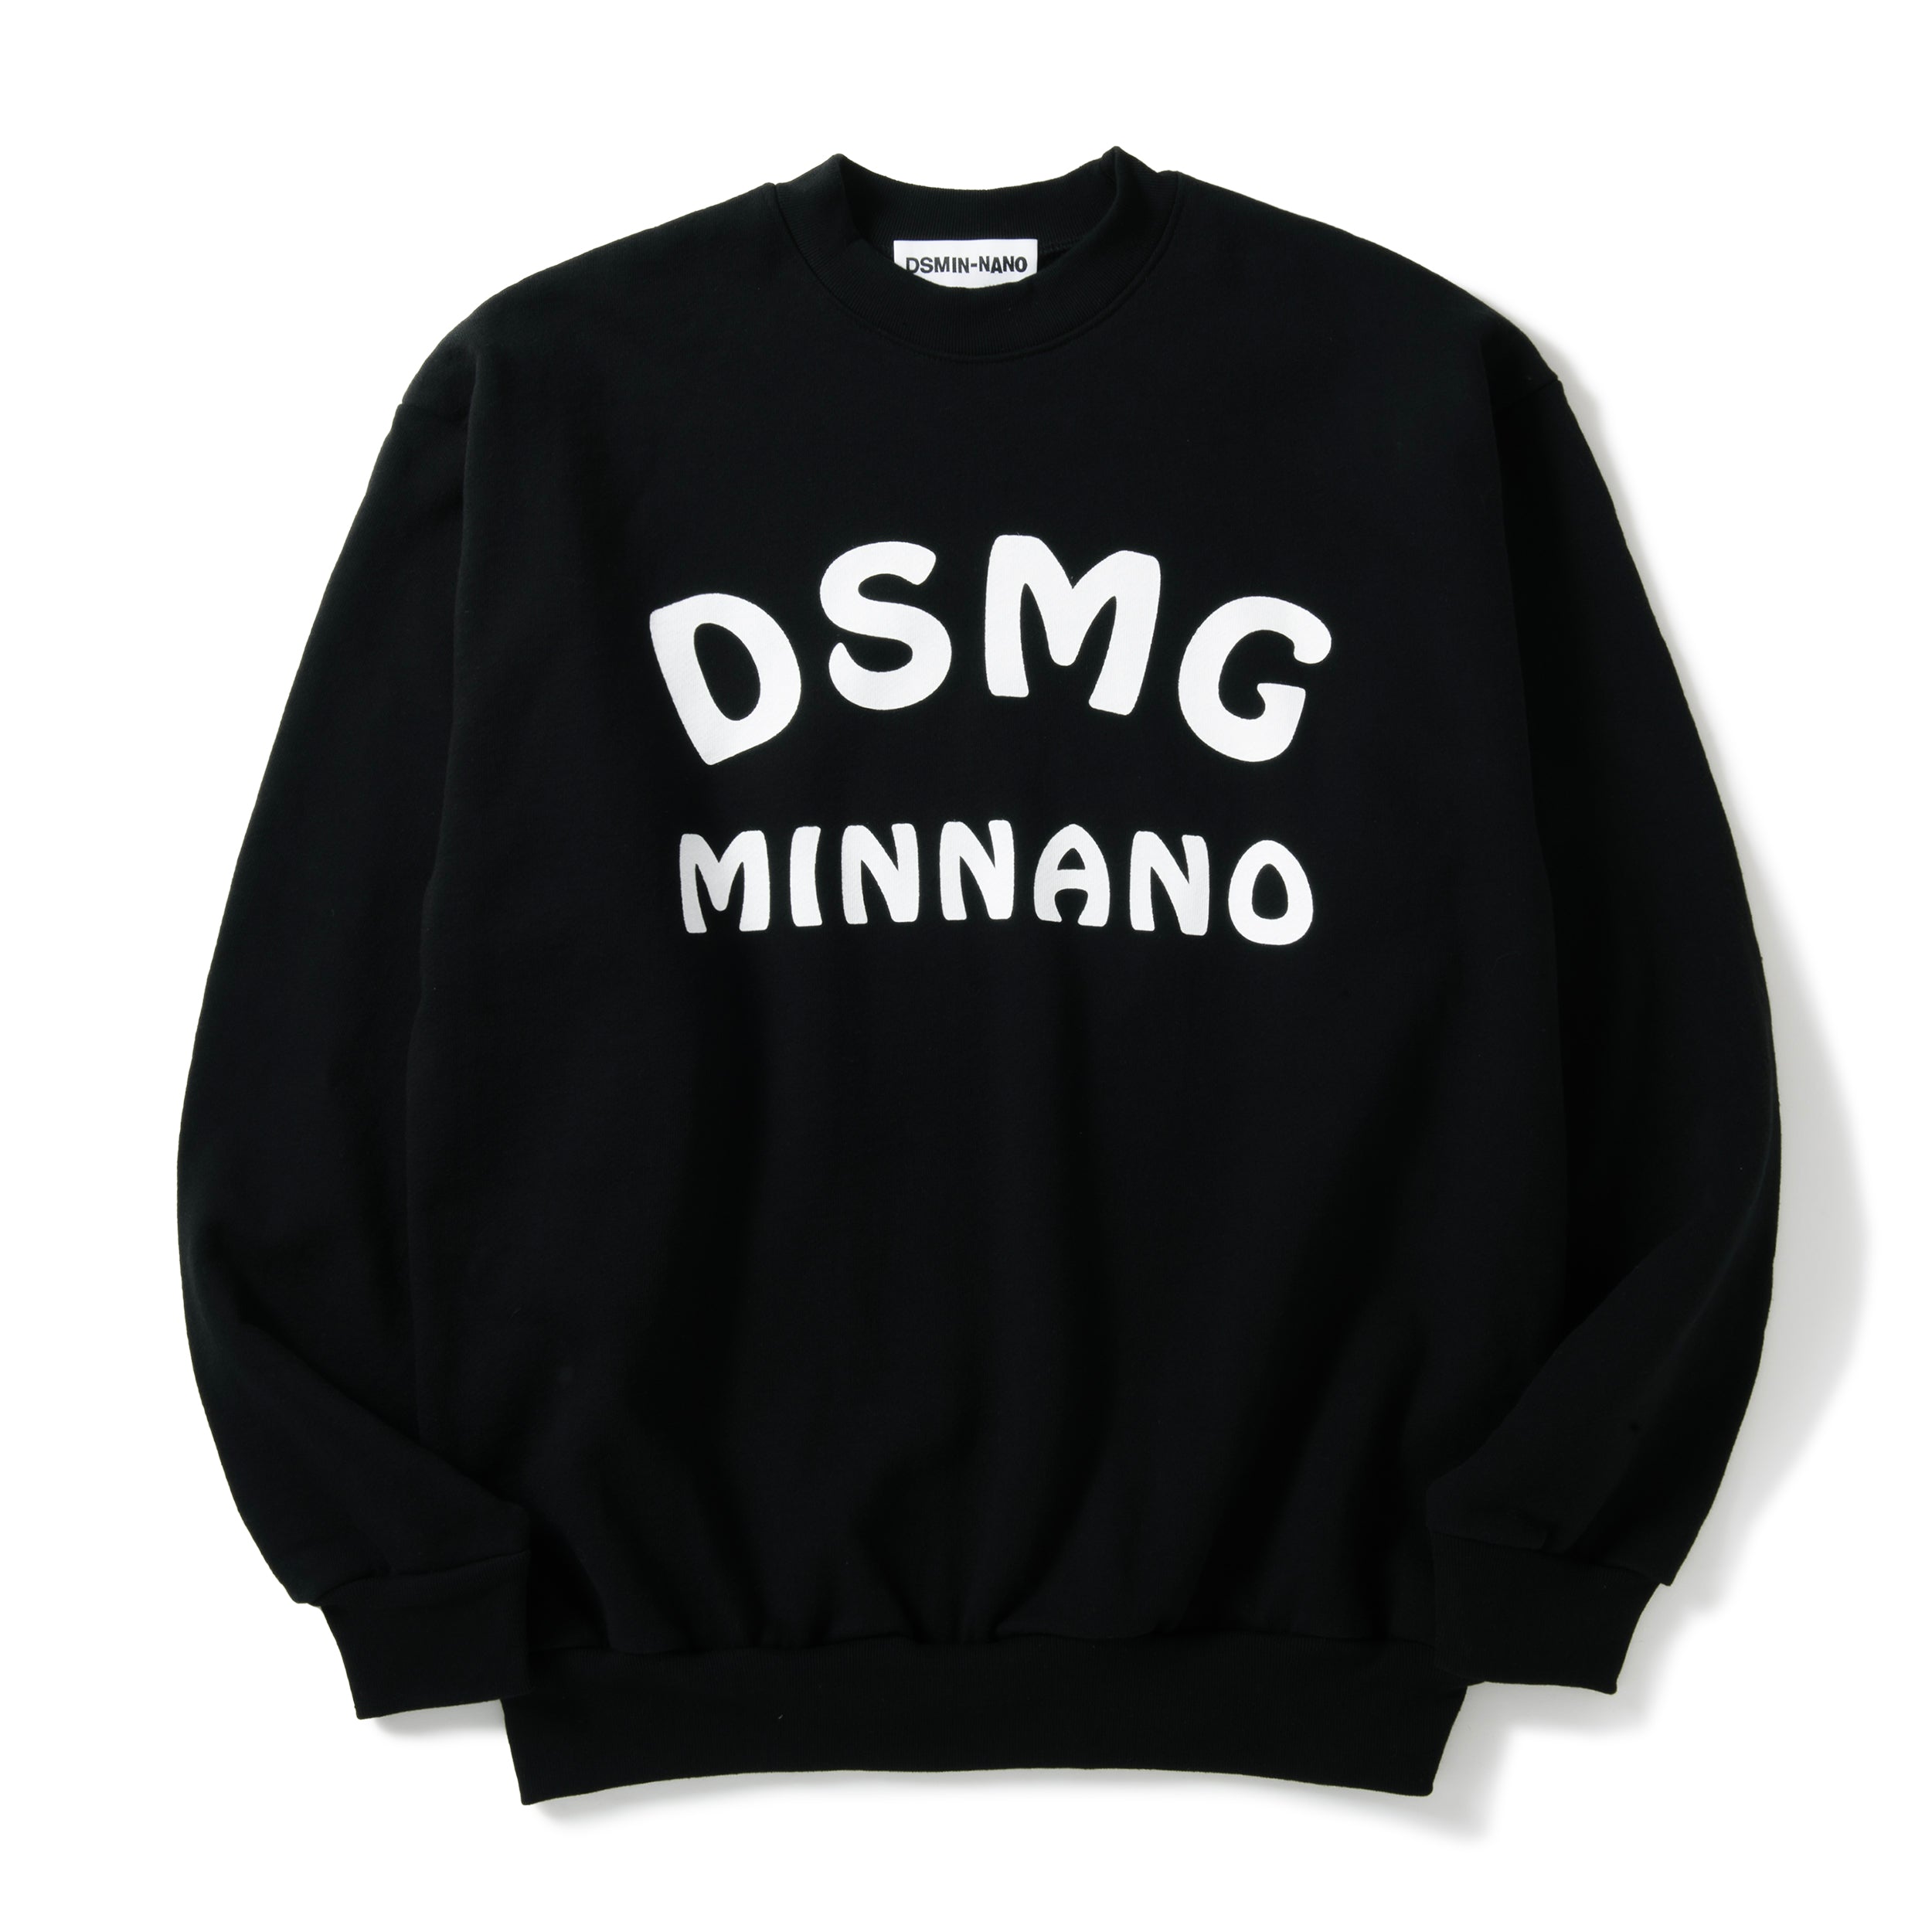 MIN-NANO – DSMG E-SHOP